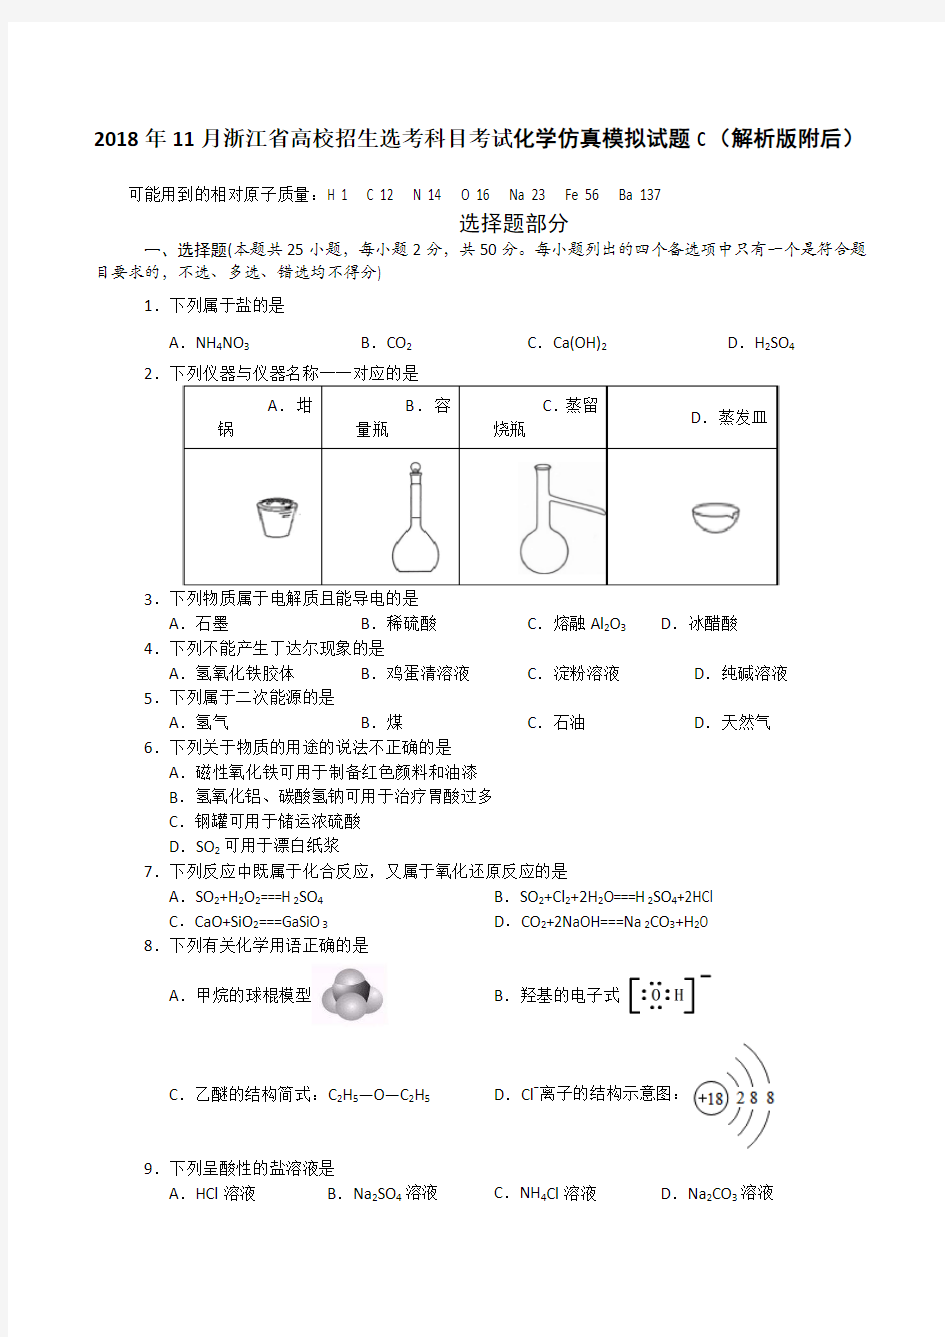 2018年11月浙江省高校招生选考科目考试化学仿真模拟试题C(解析版附后)